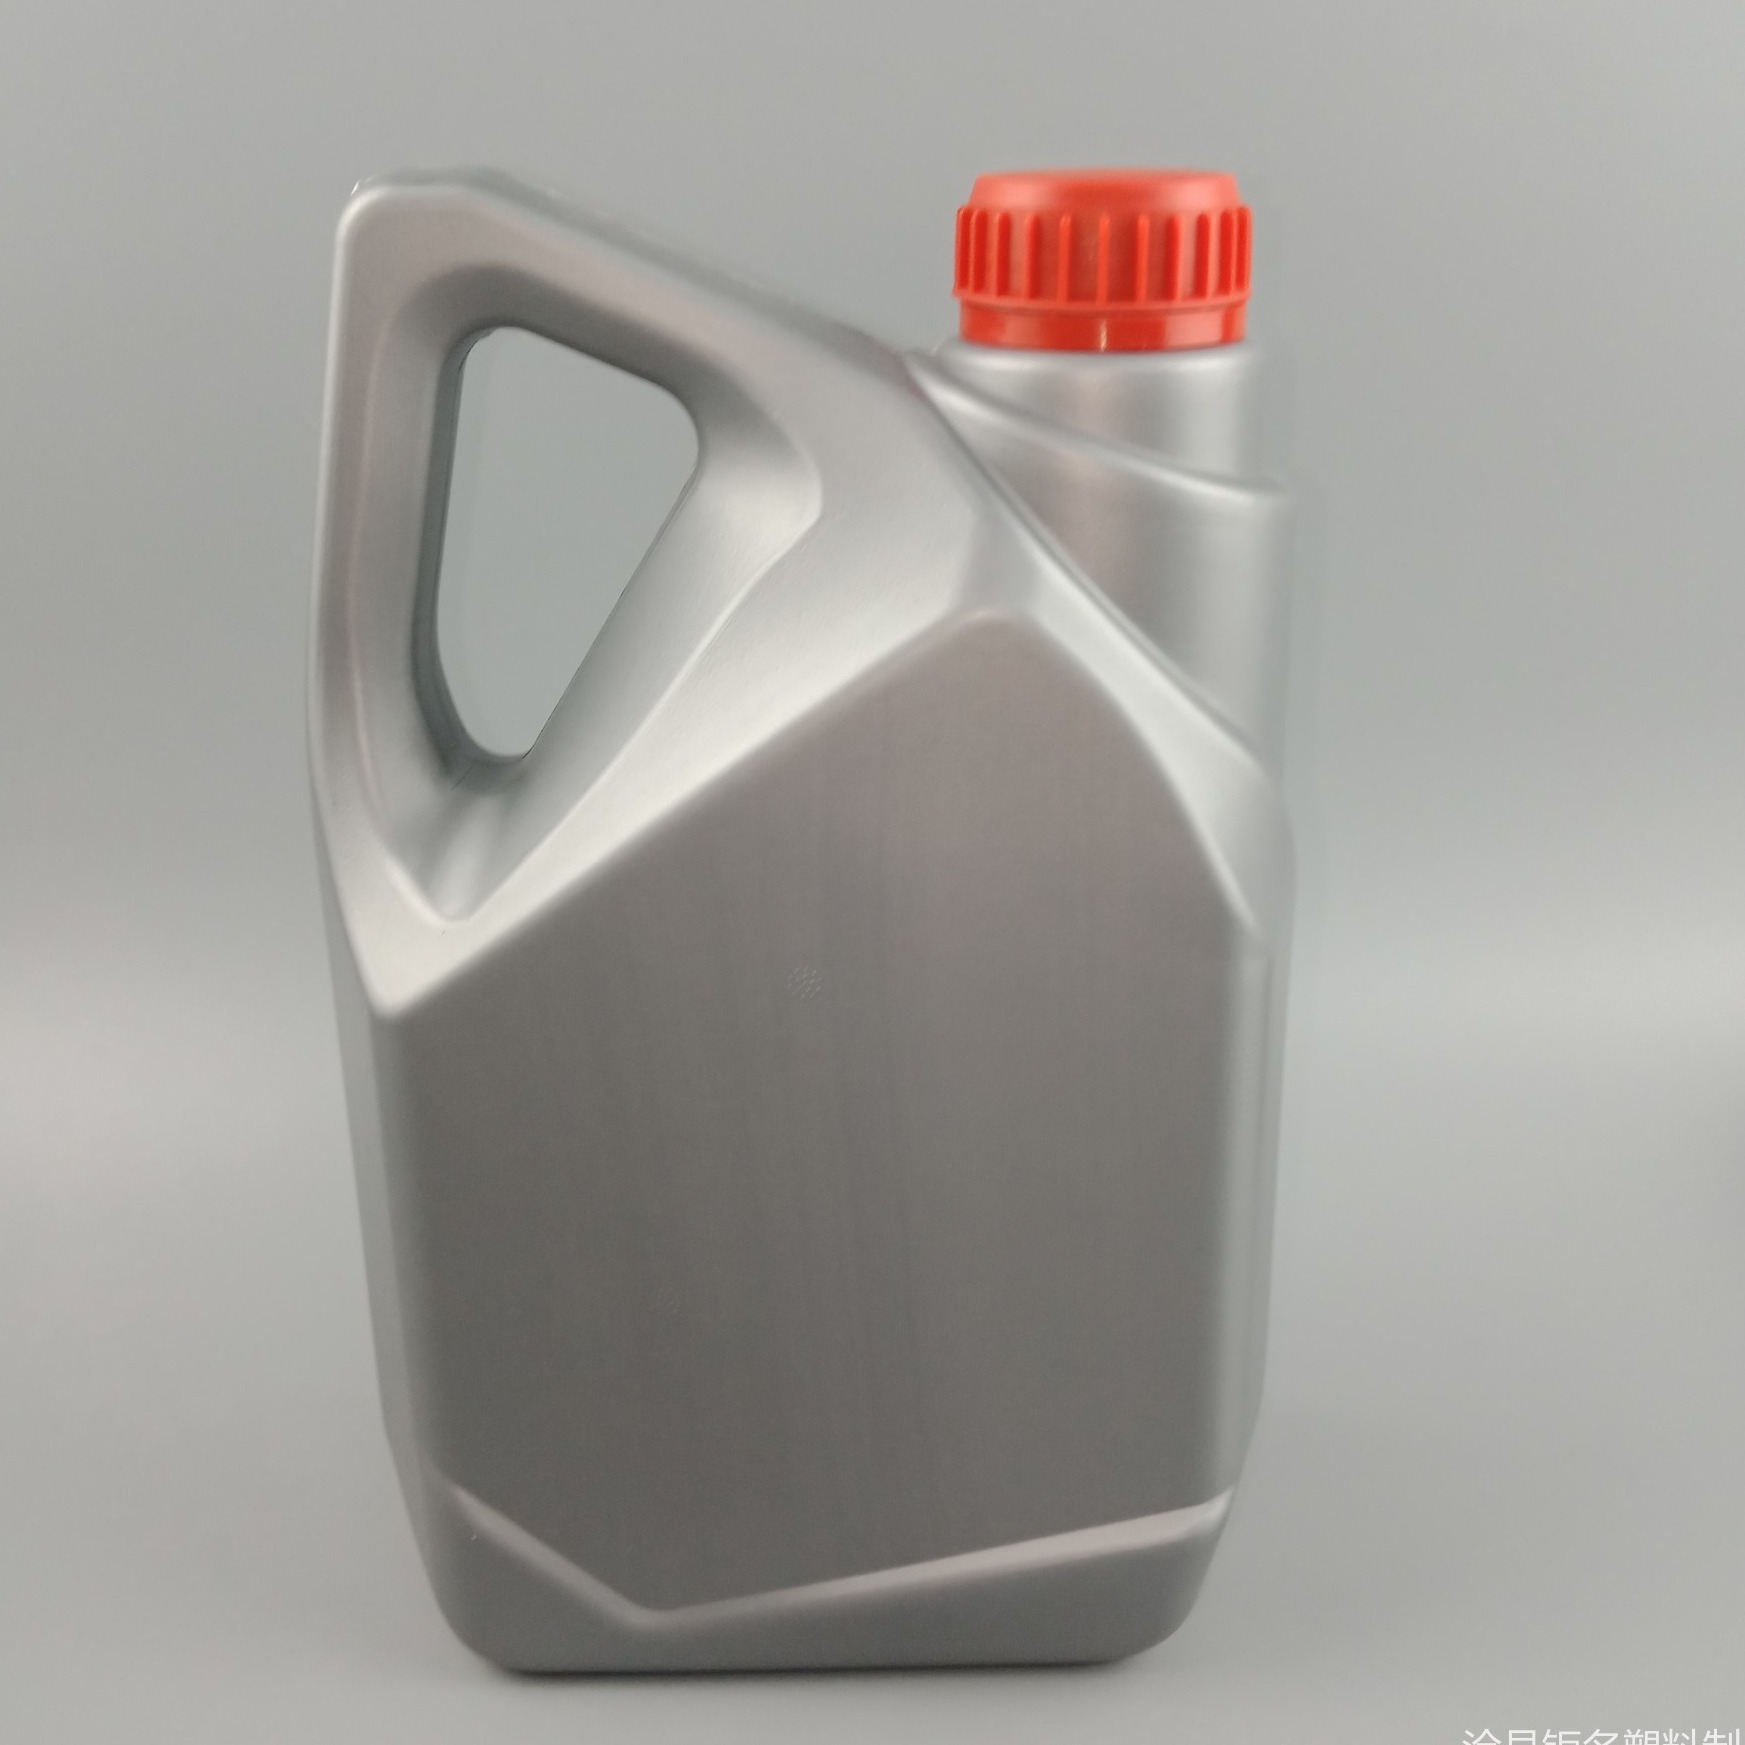 钜名生产 塑料瓶 4L 机油壶 机油桶 机油瓶 车用尿素桶 防冻液桶 2l 4l 机油壶  可 定制加工 提供 设计瓶型